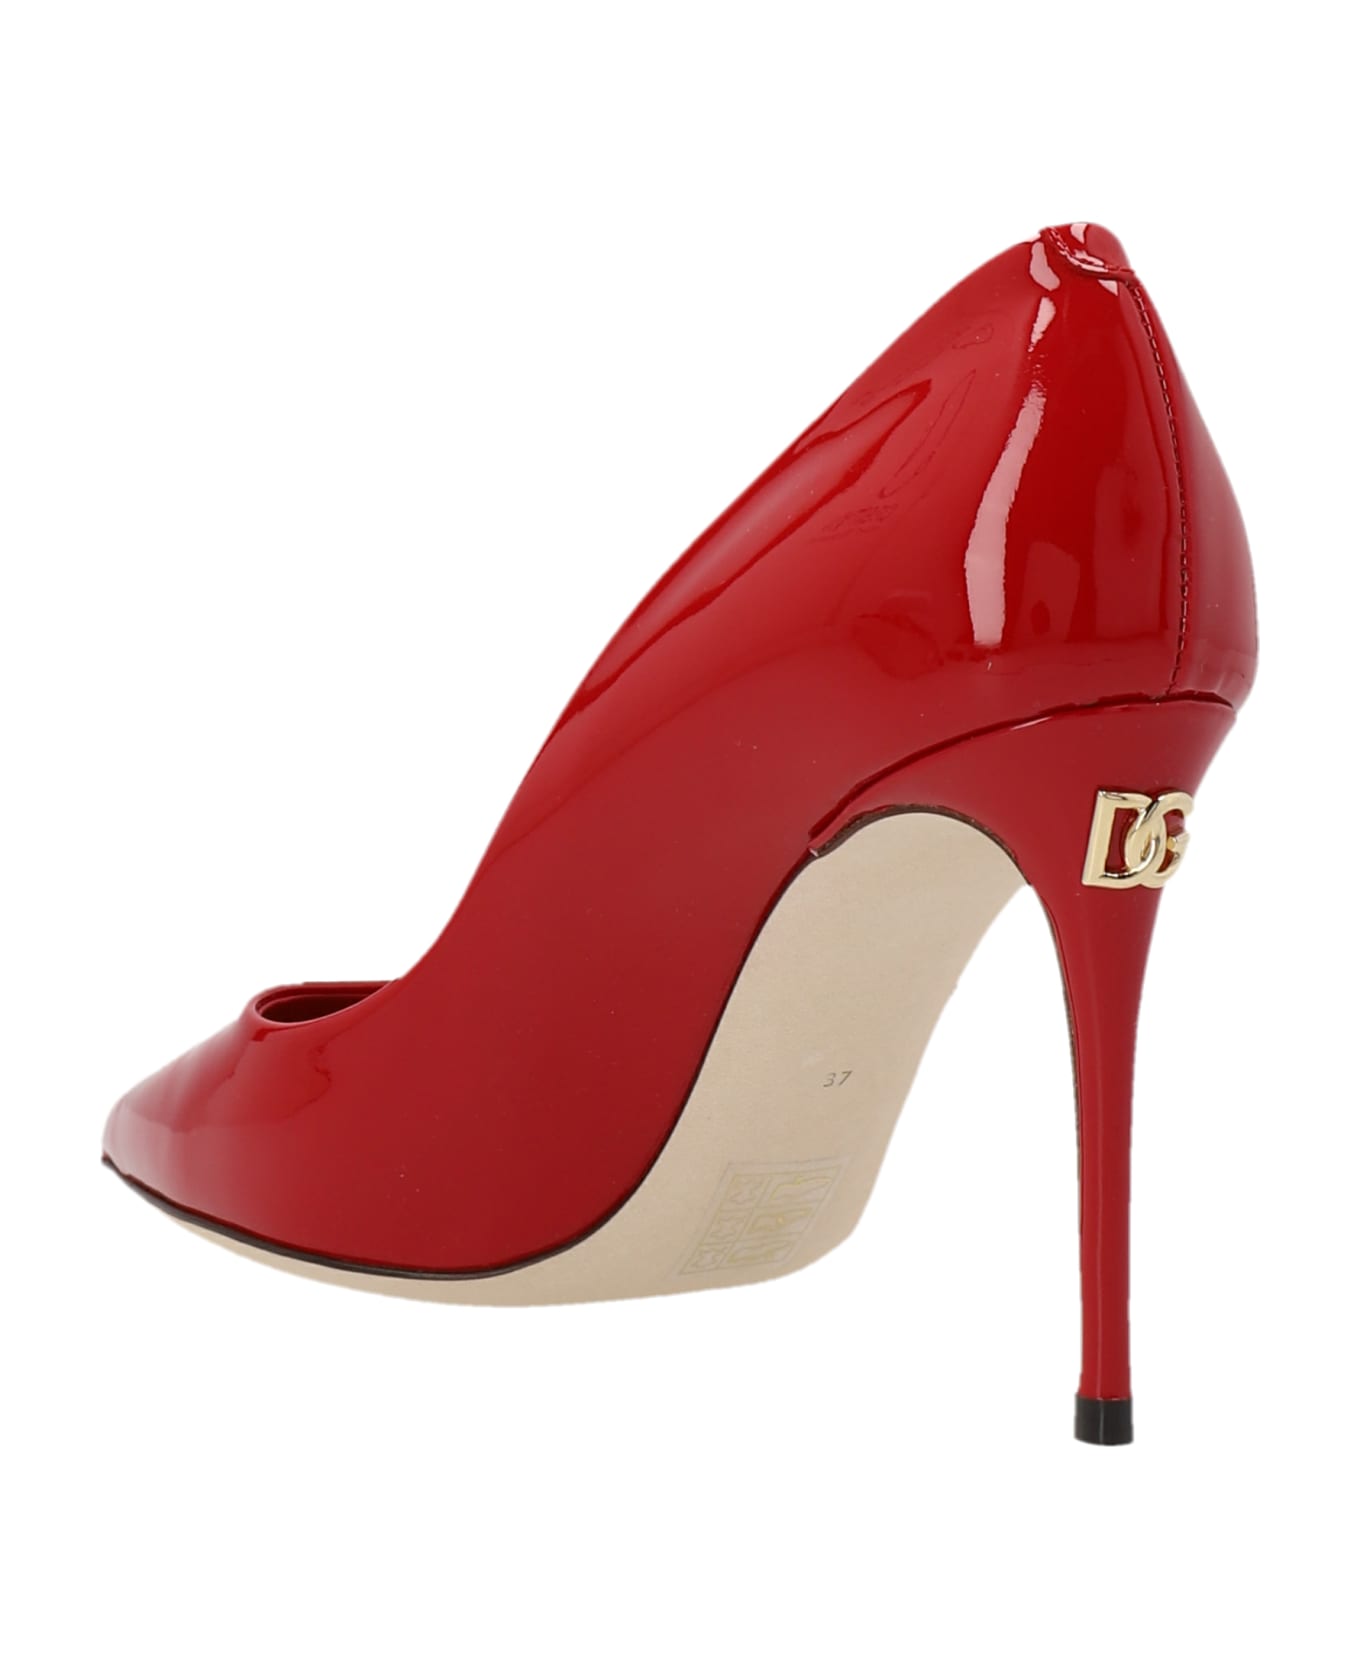 Dolce & Gabbana 'cardinal' Pumps - Red